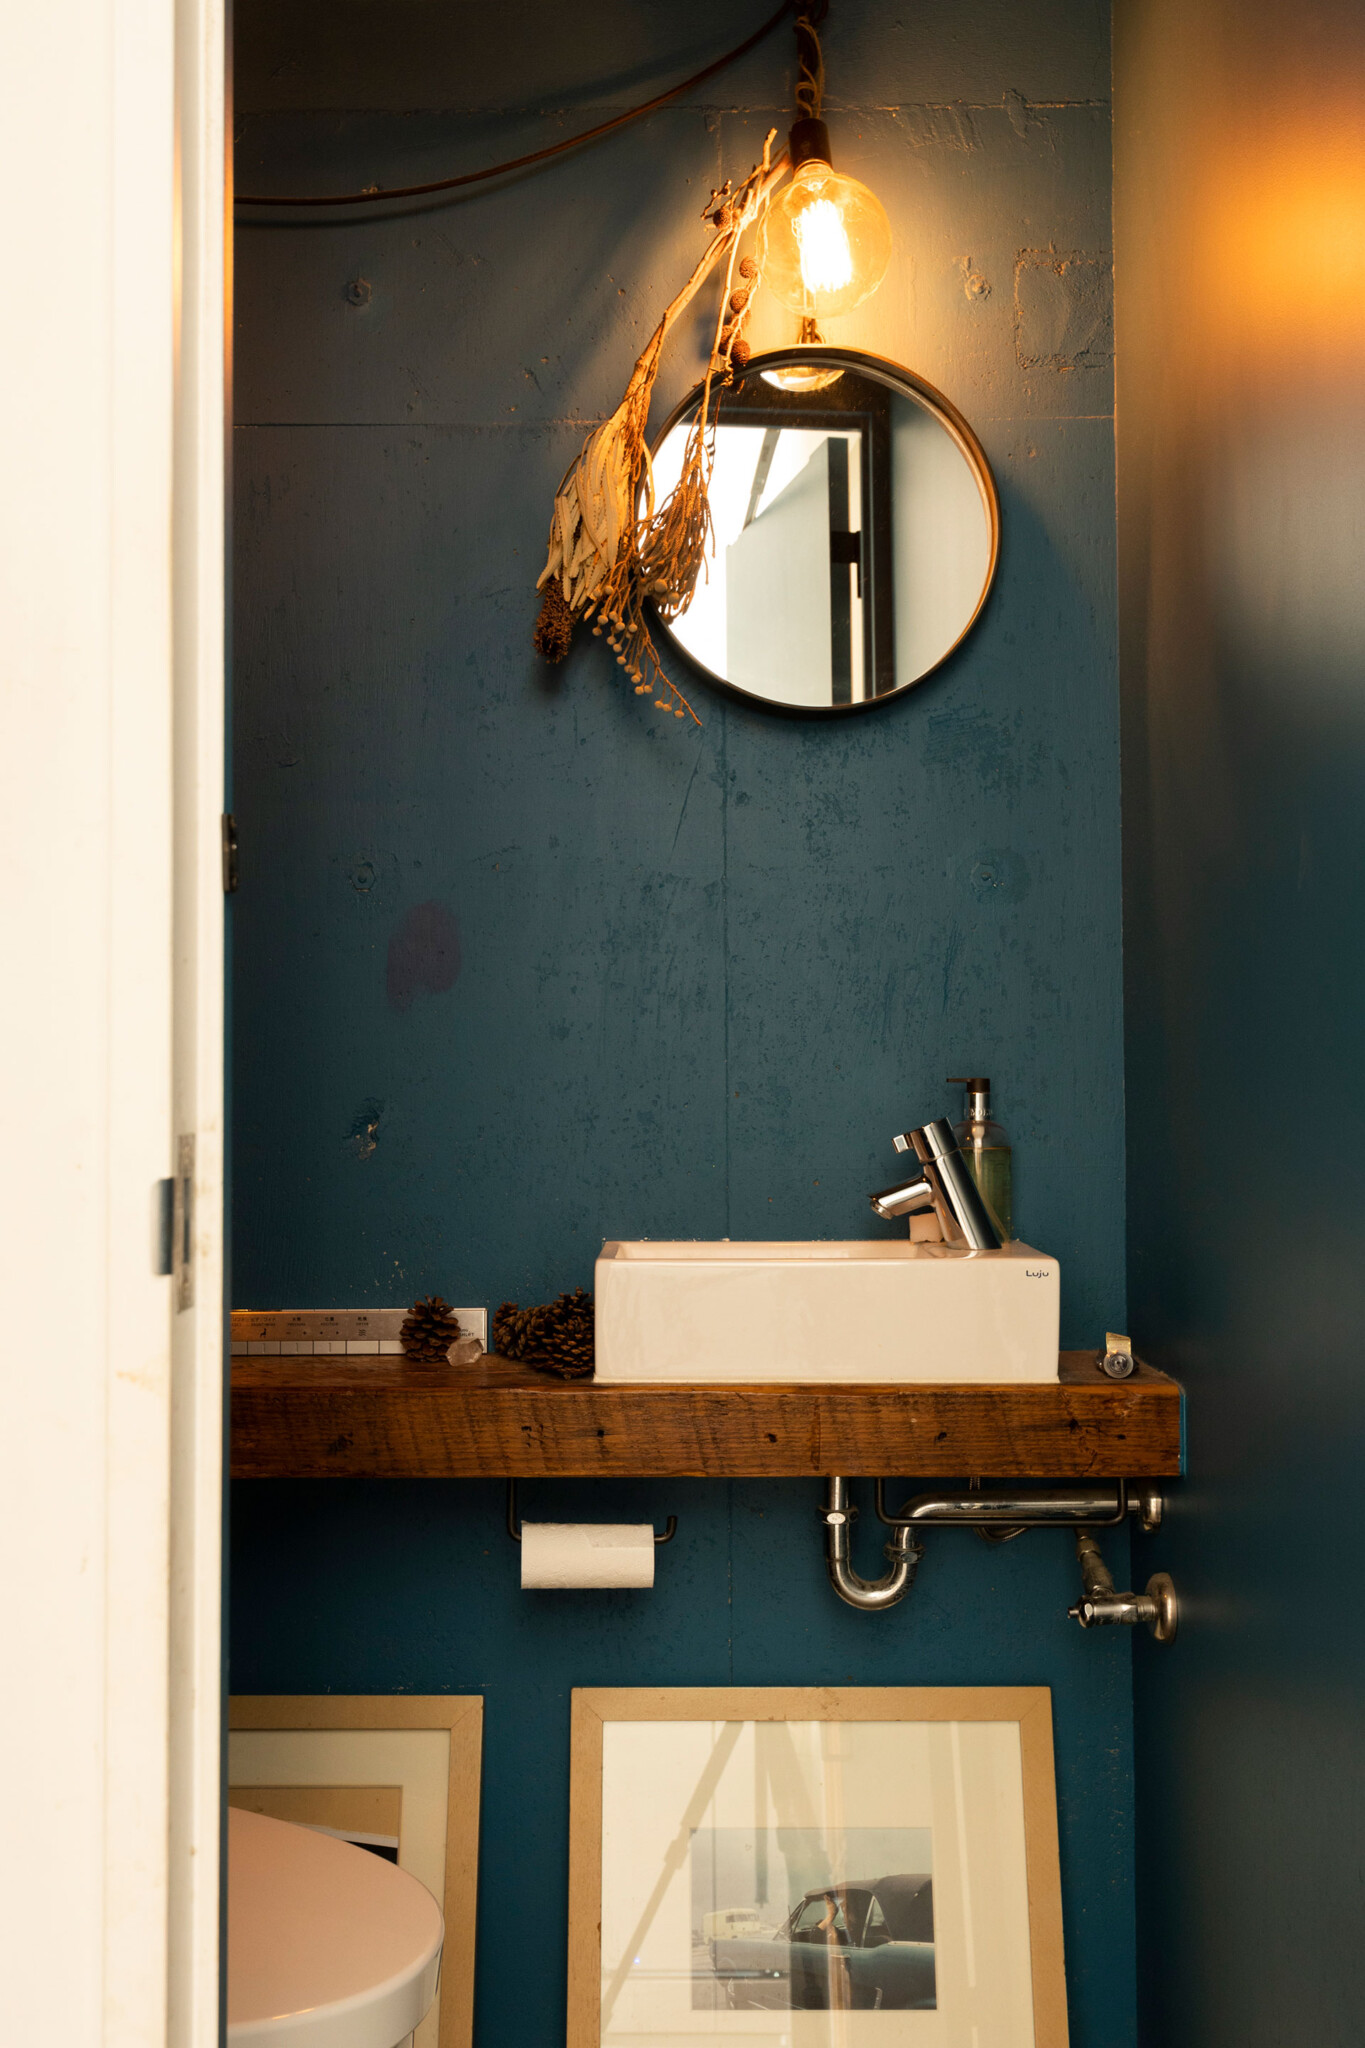 ブルーの壁紙を使ったトイレは、クラシカルな雰囲気。